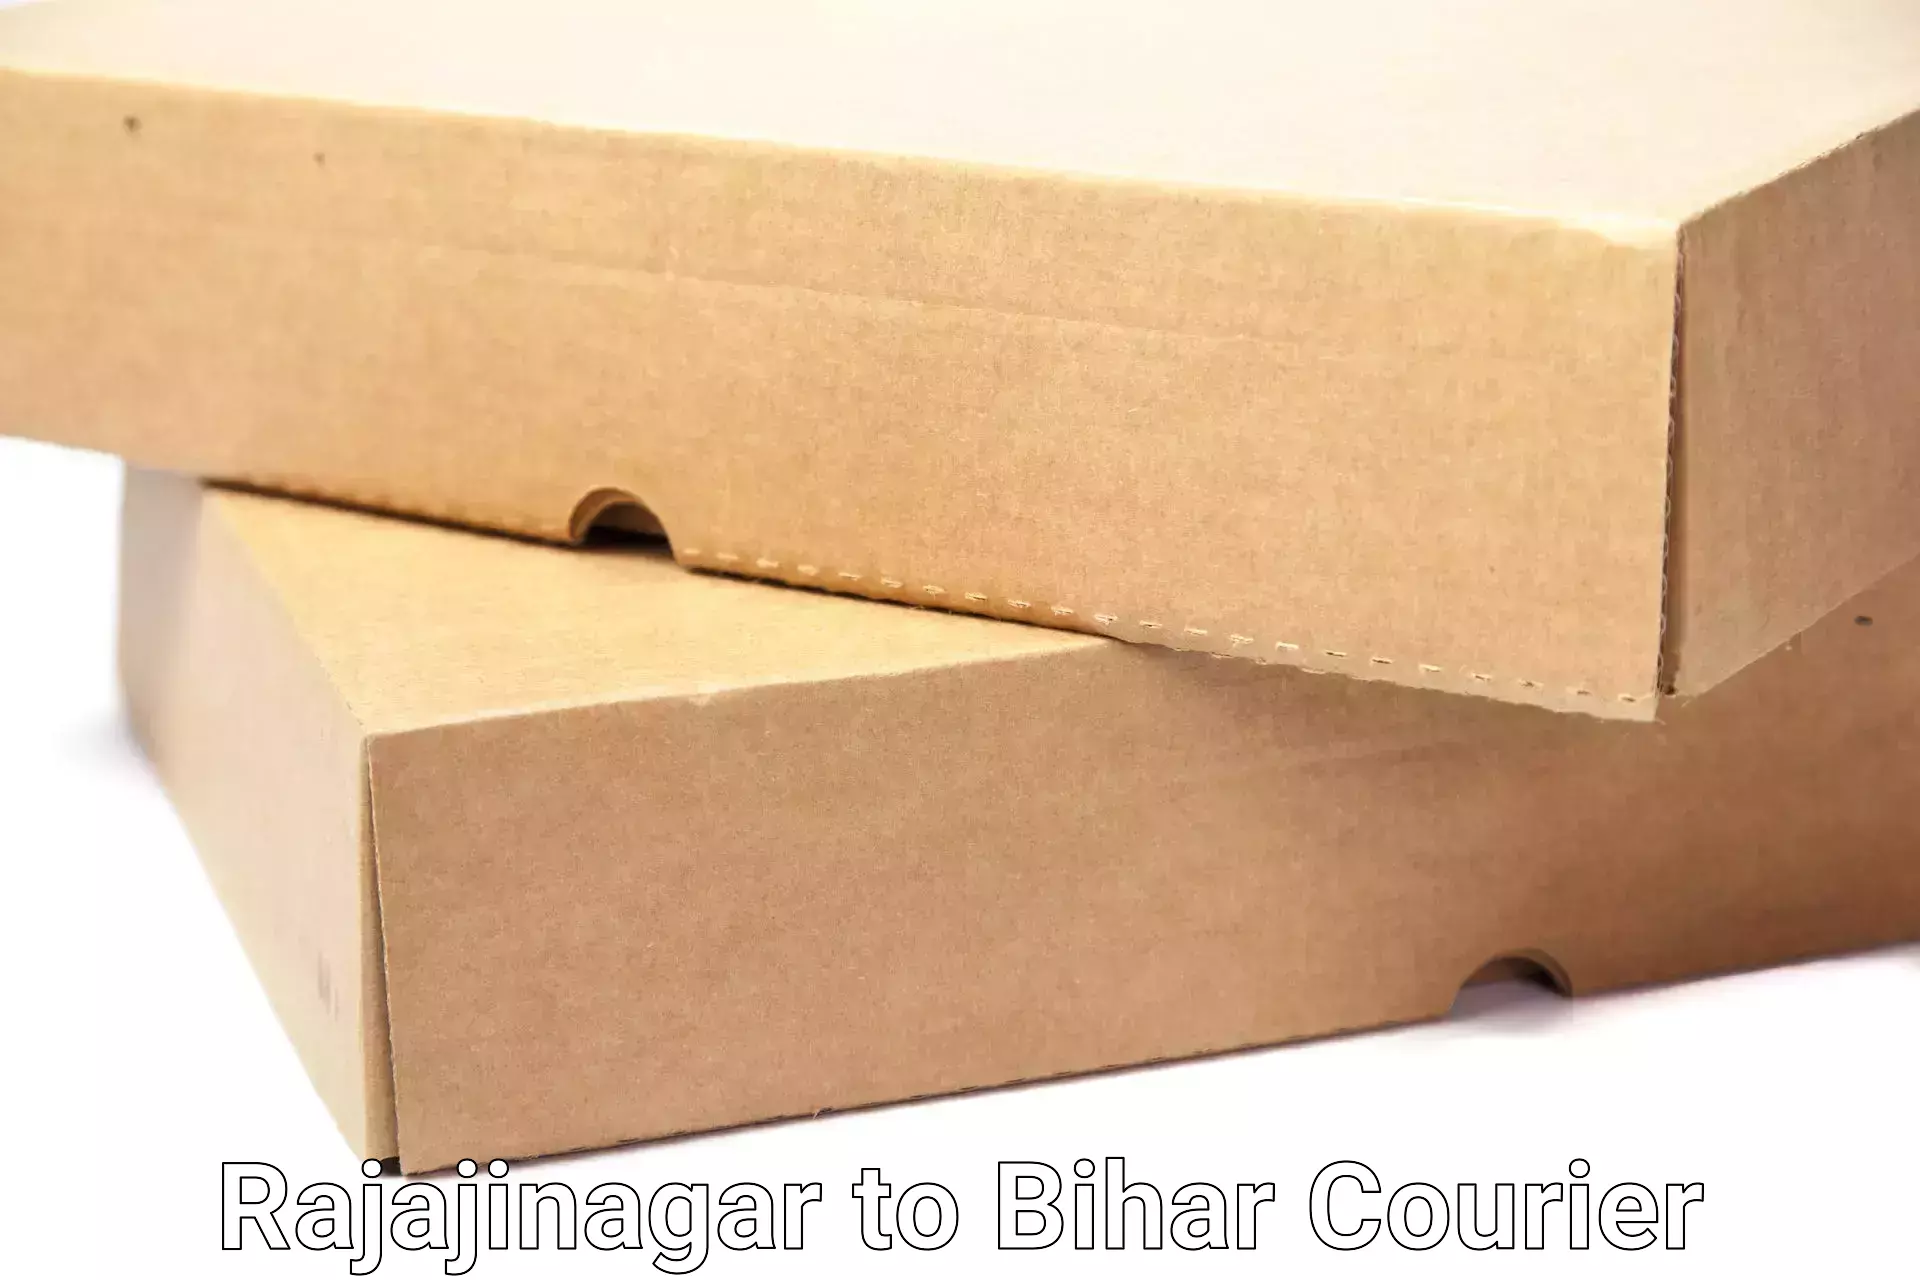 Professional packing services Rajajinagar to Bihar